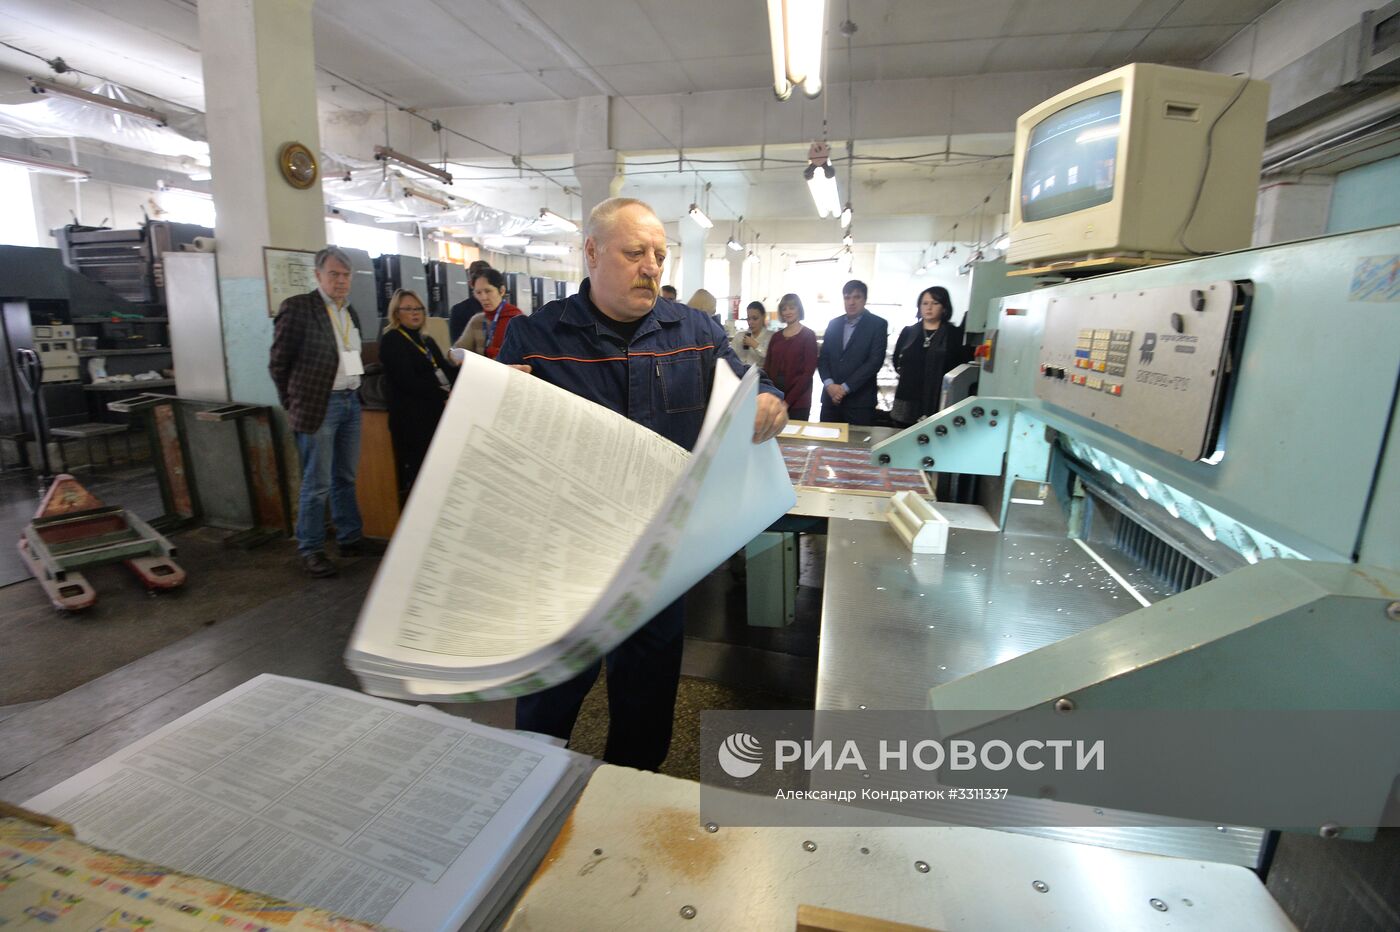 Передача бюллетеней для голосования на выборах президента РФ в Челябинской области